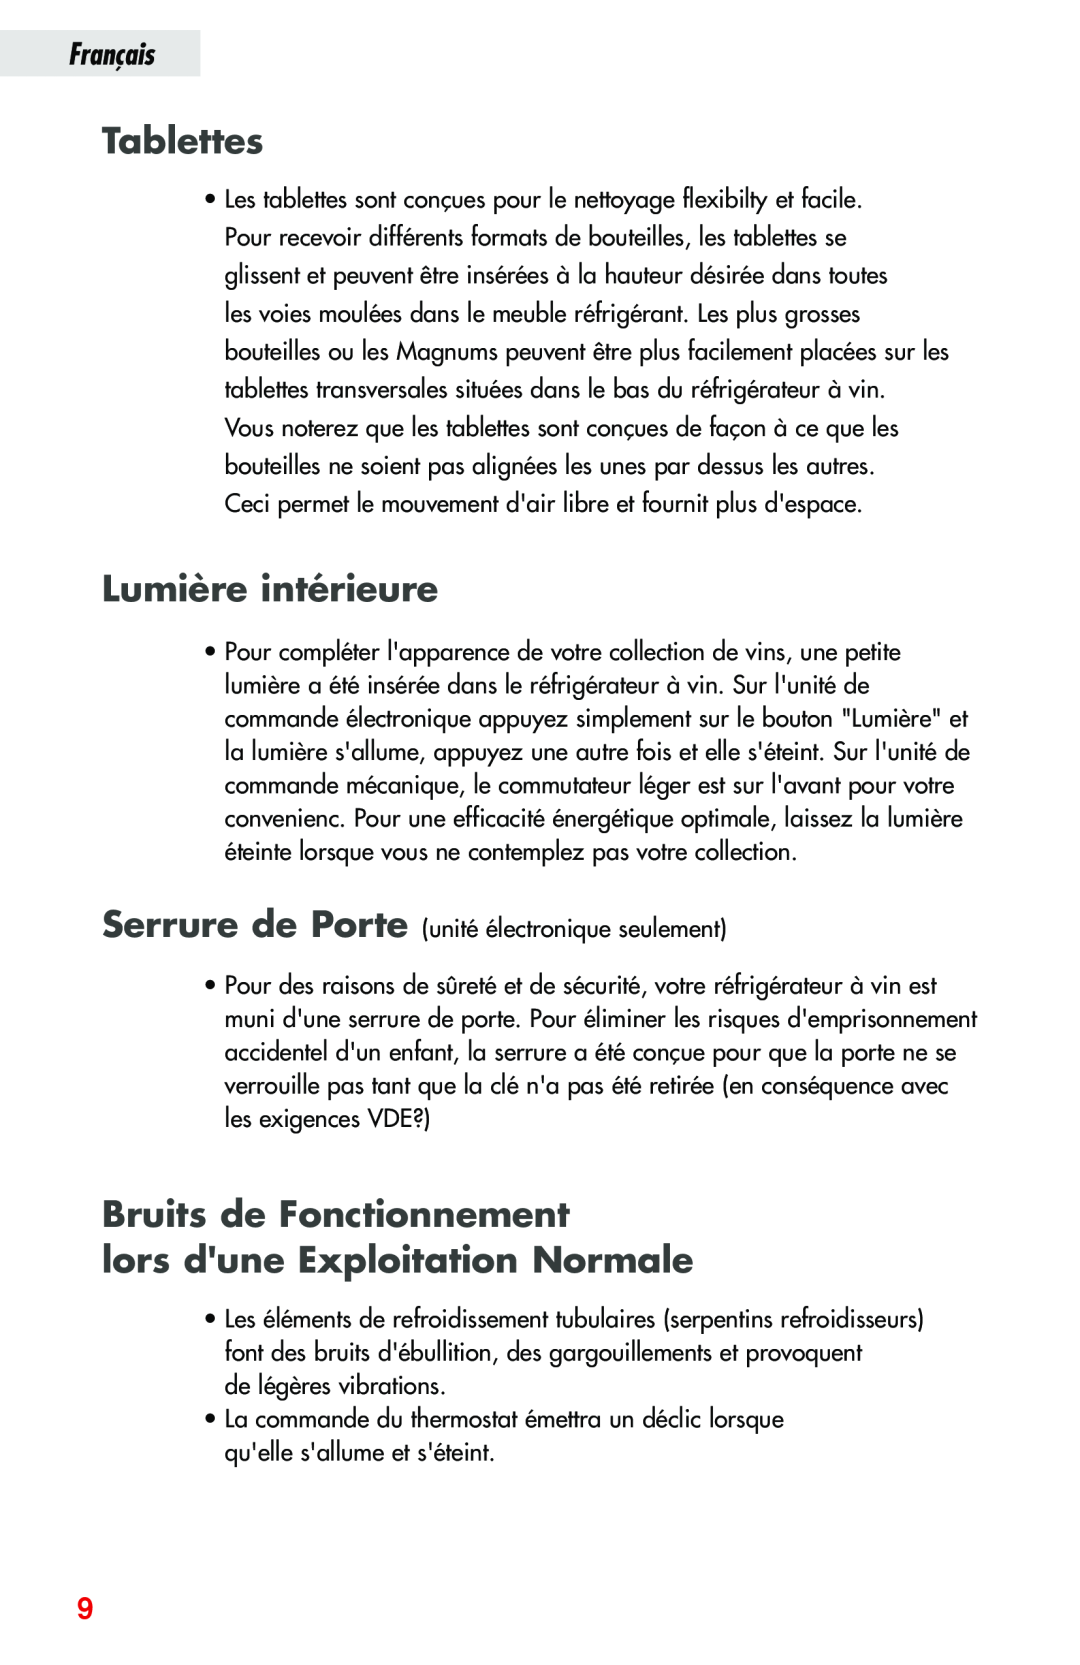 Haier JC-82GB manual Tablettes, Lumière intérieure, Bruits de Fonctionnement lors dune Exploitation Normale, Français 